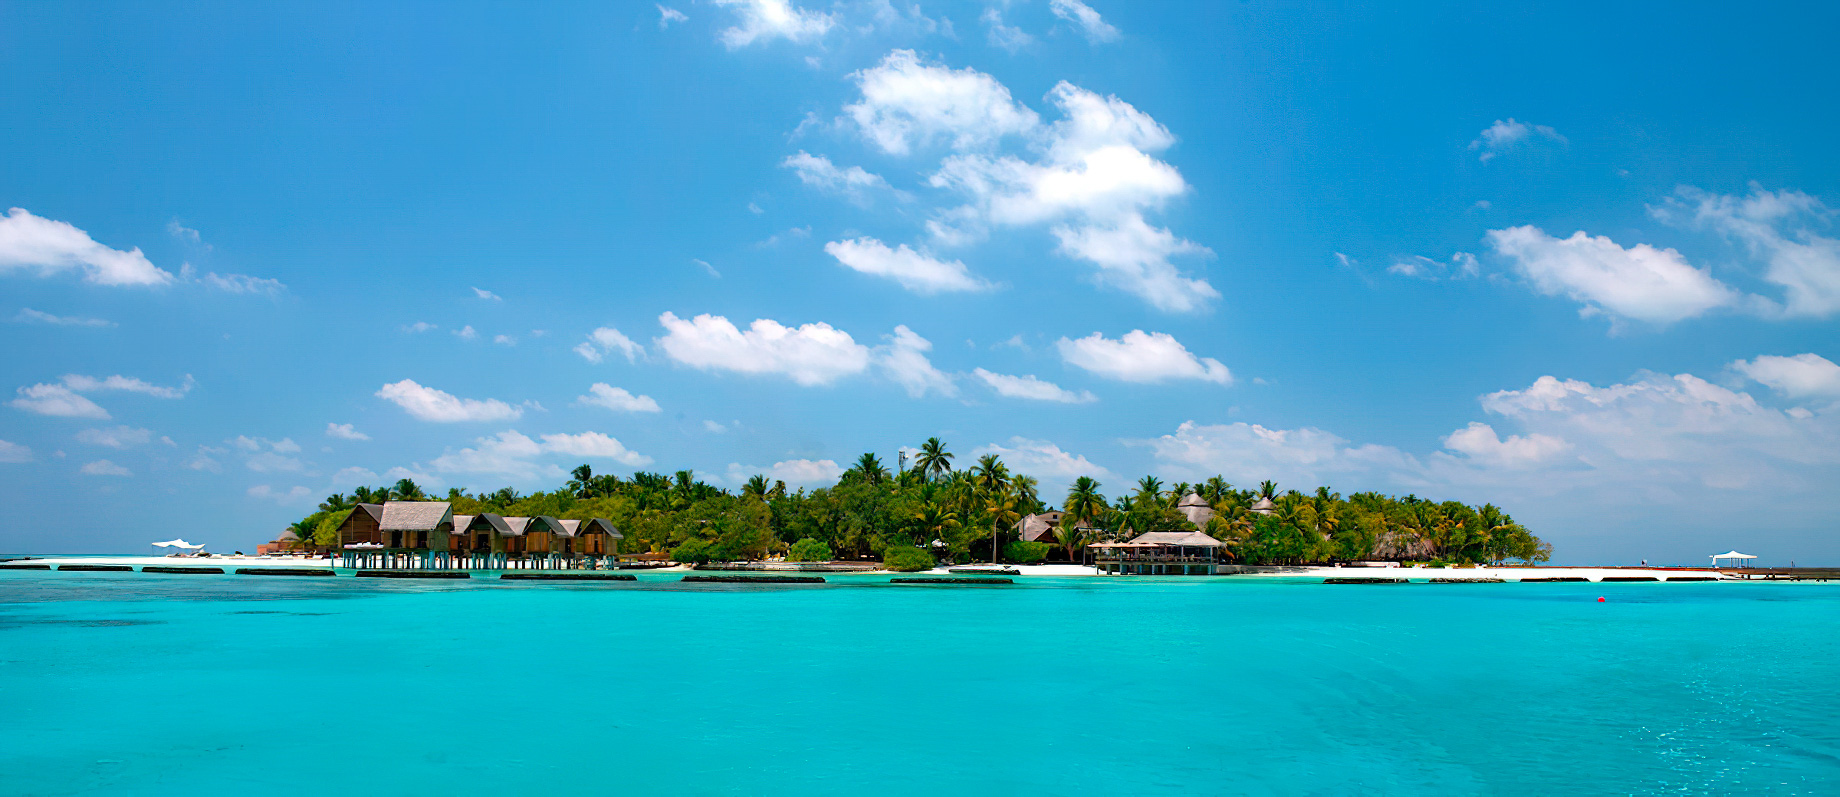 Constance Moofushi Resort – South Ari Atoll, Maldives – Resort Ocean View